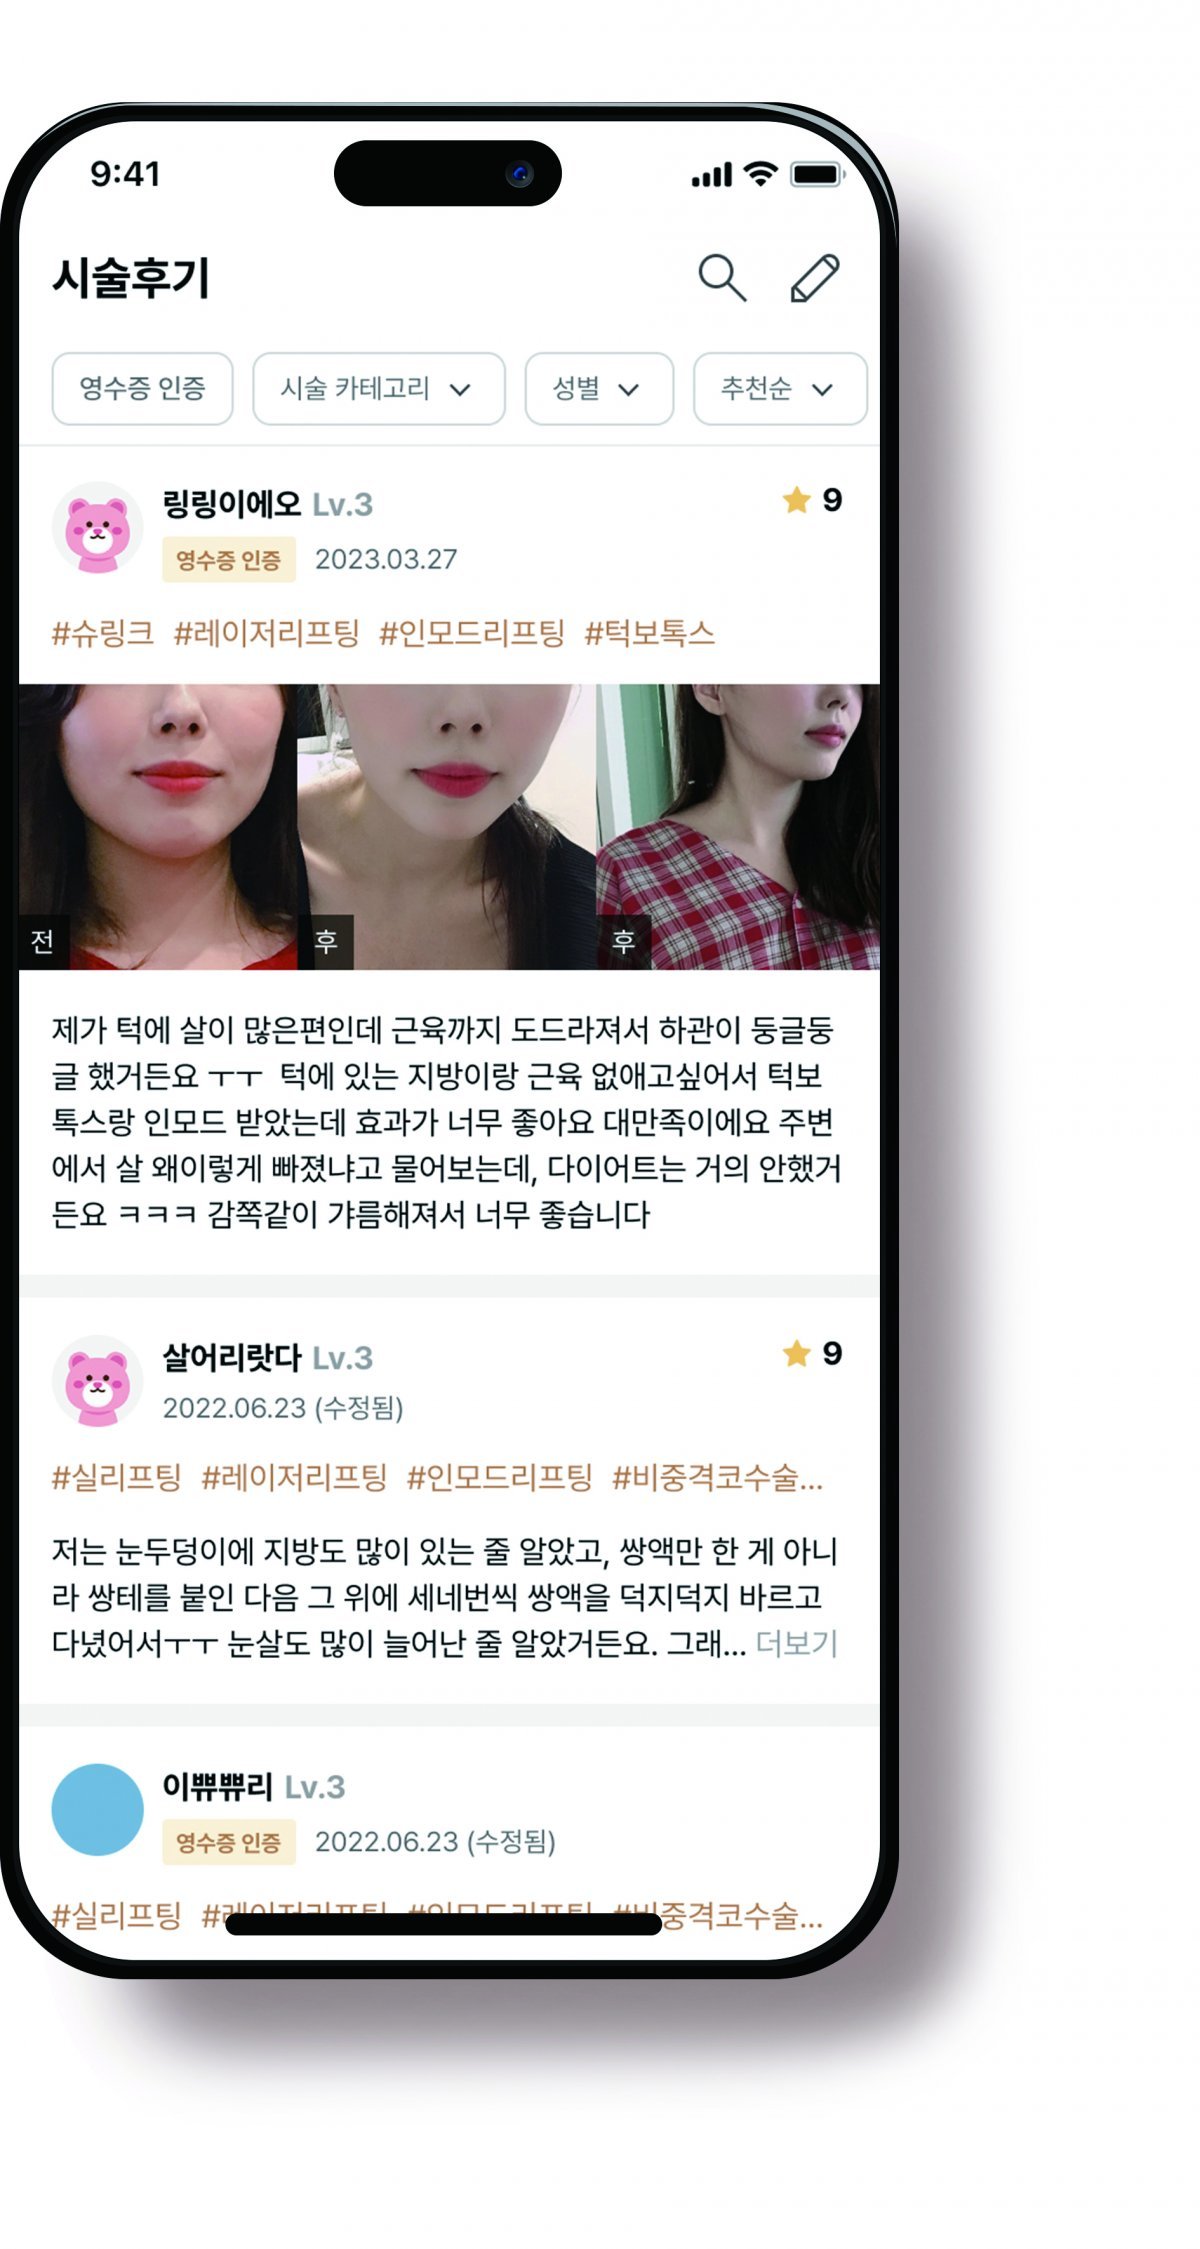 강남언니 앱 이용자가 올린 시술 후기. 힐링페이퍼 제공